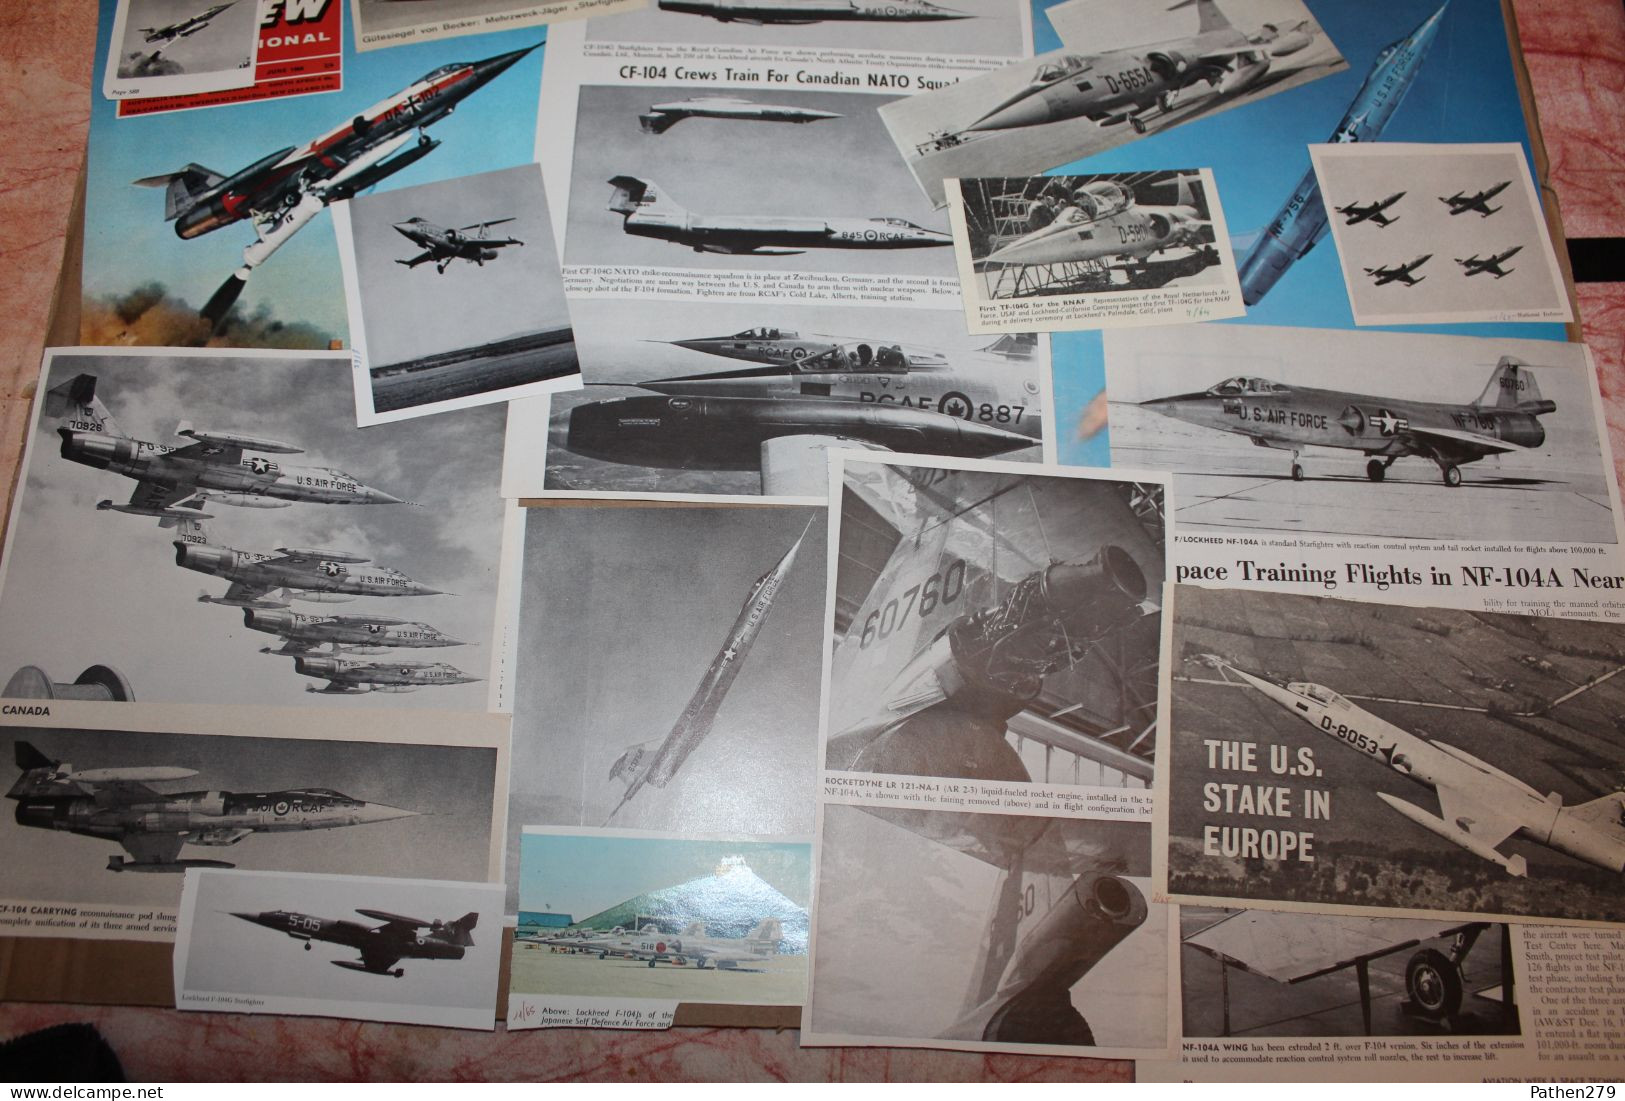 Lot De 667g D'anciennes Coupures De Presse Et Photos De L'aéronef Américain Lockheed F-104 "Starfighter" - Fliegerei